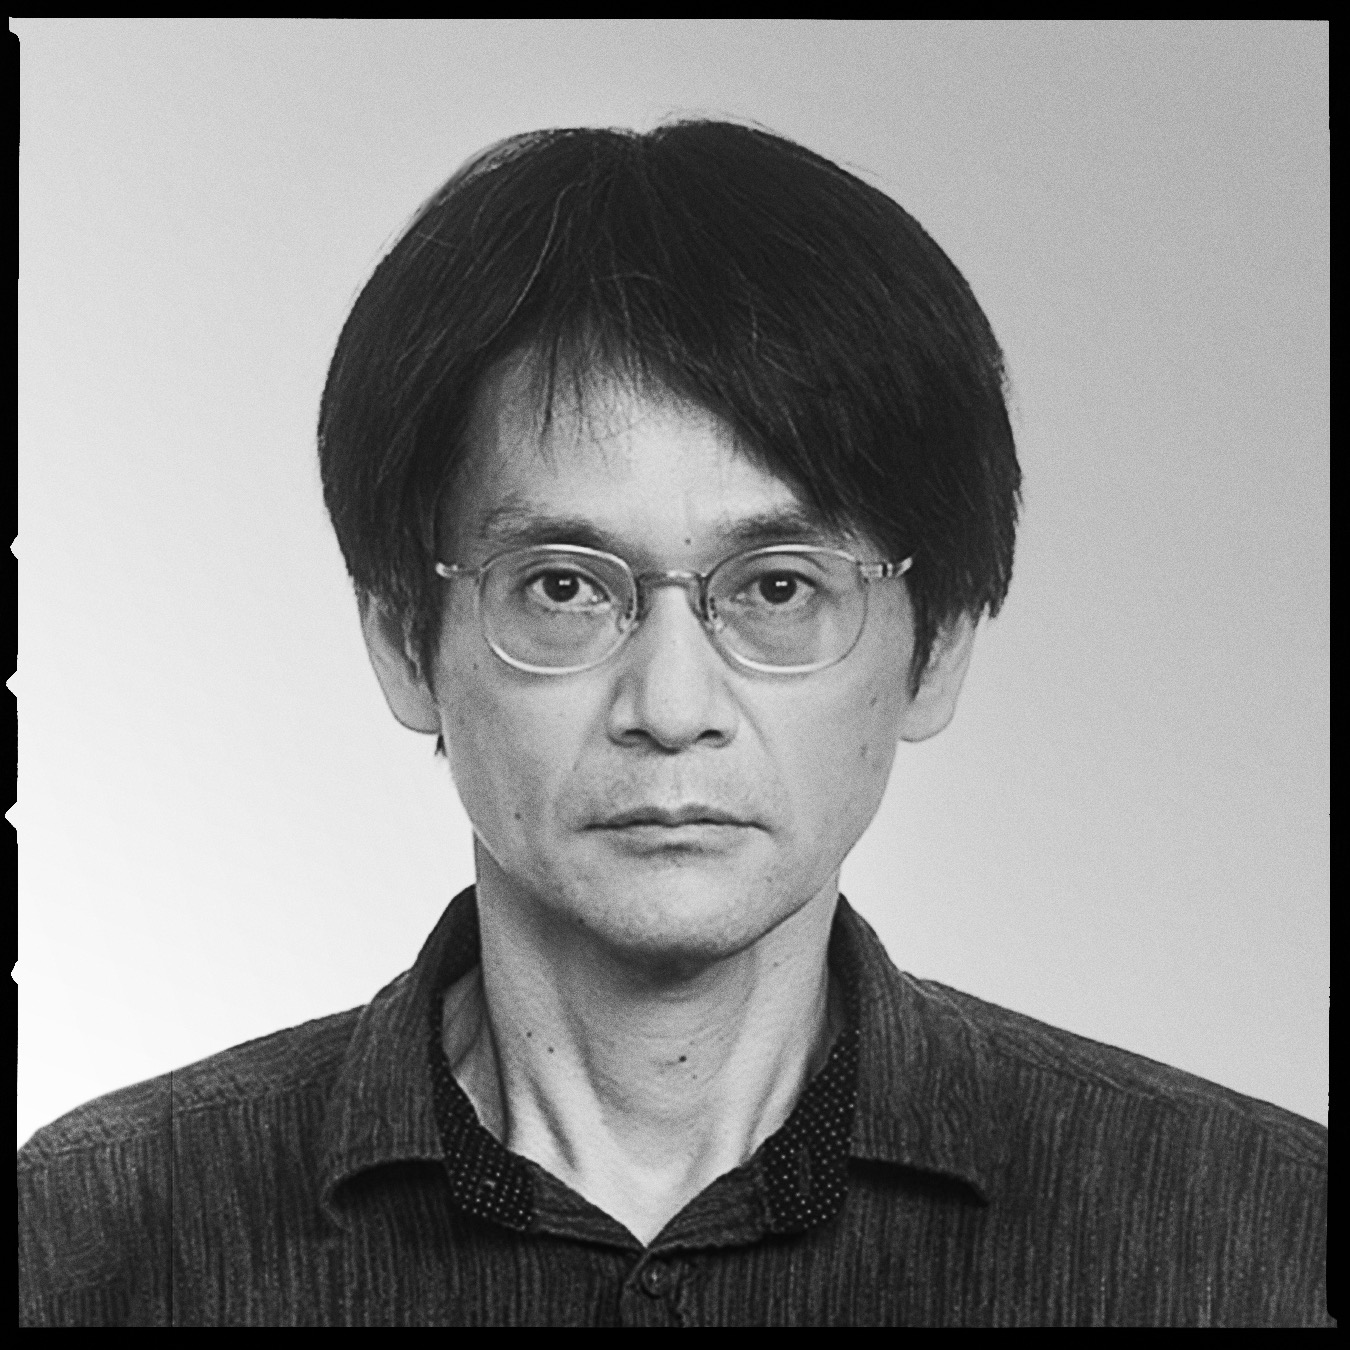 Takuro Mochizuki